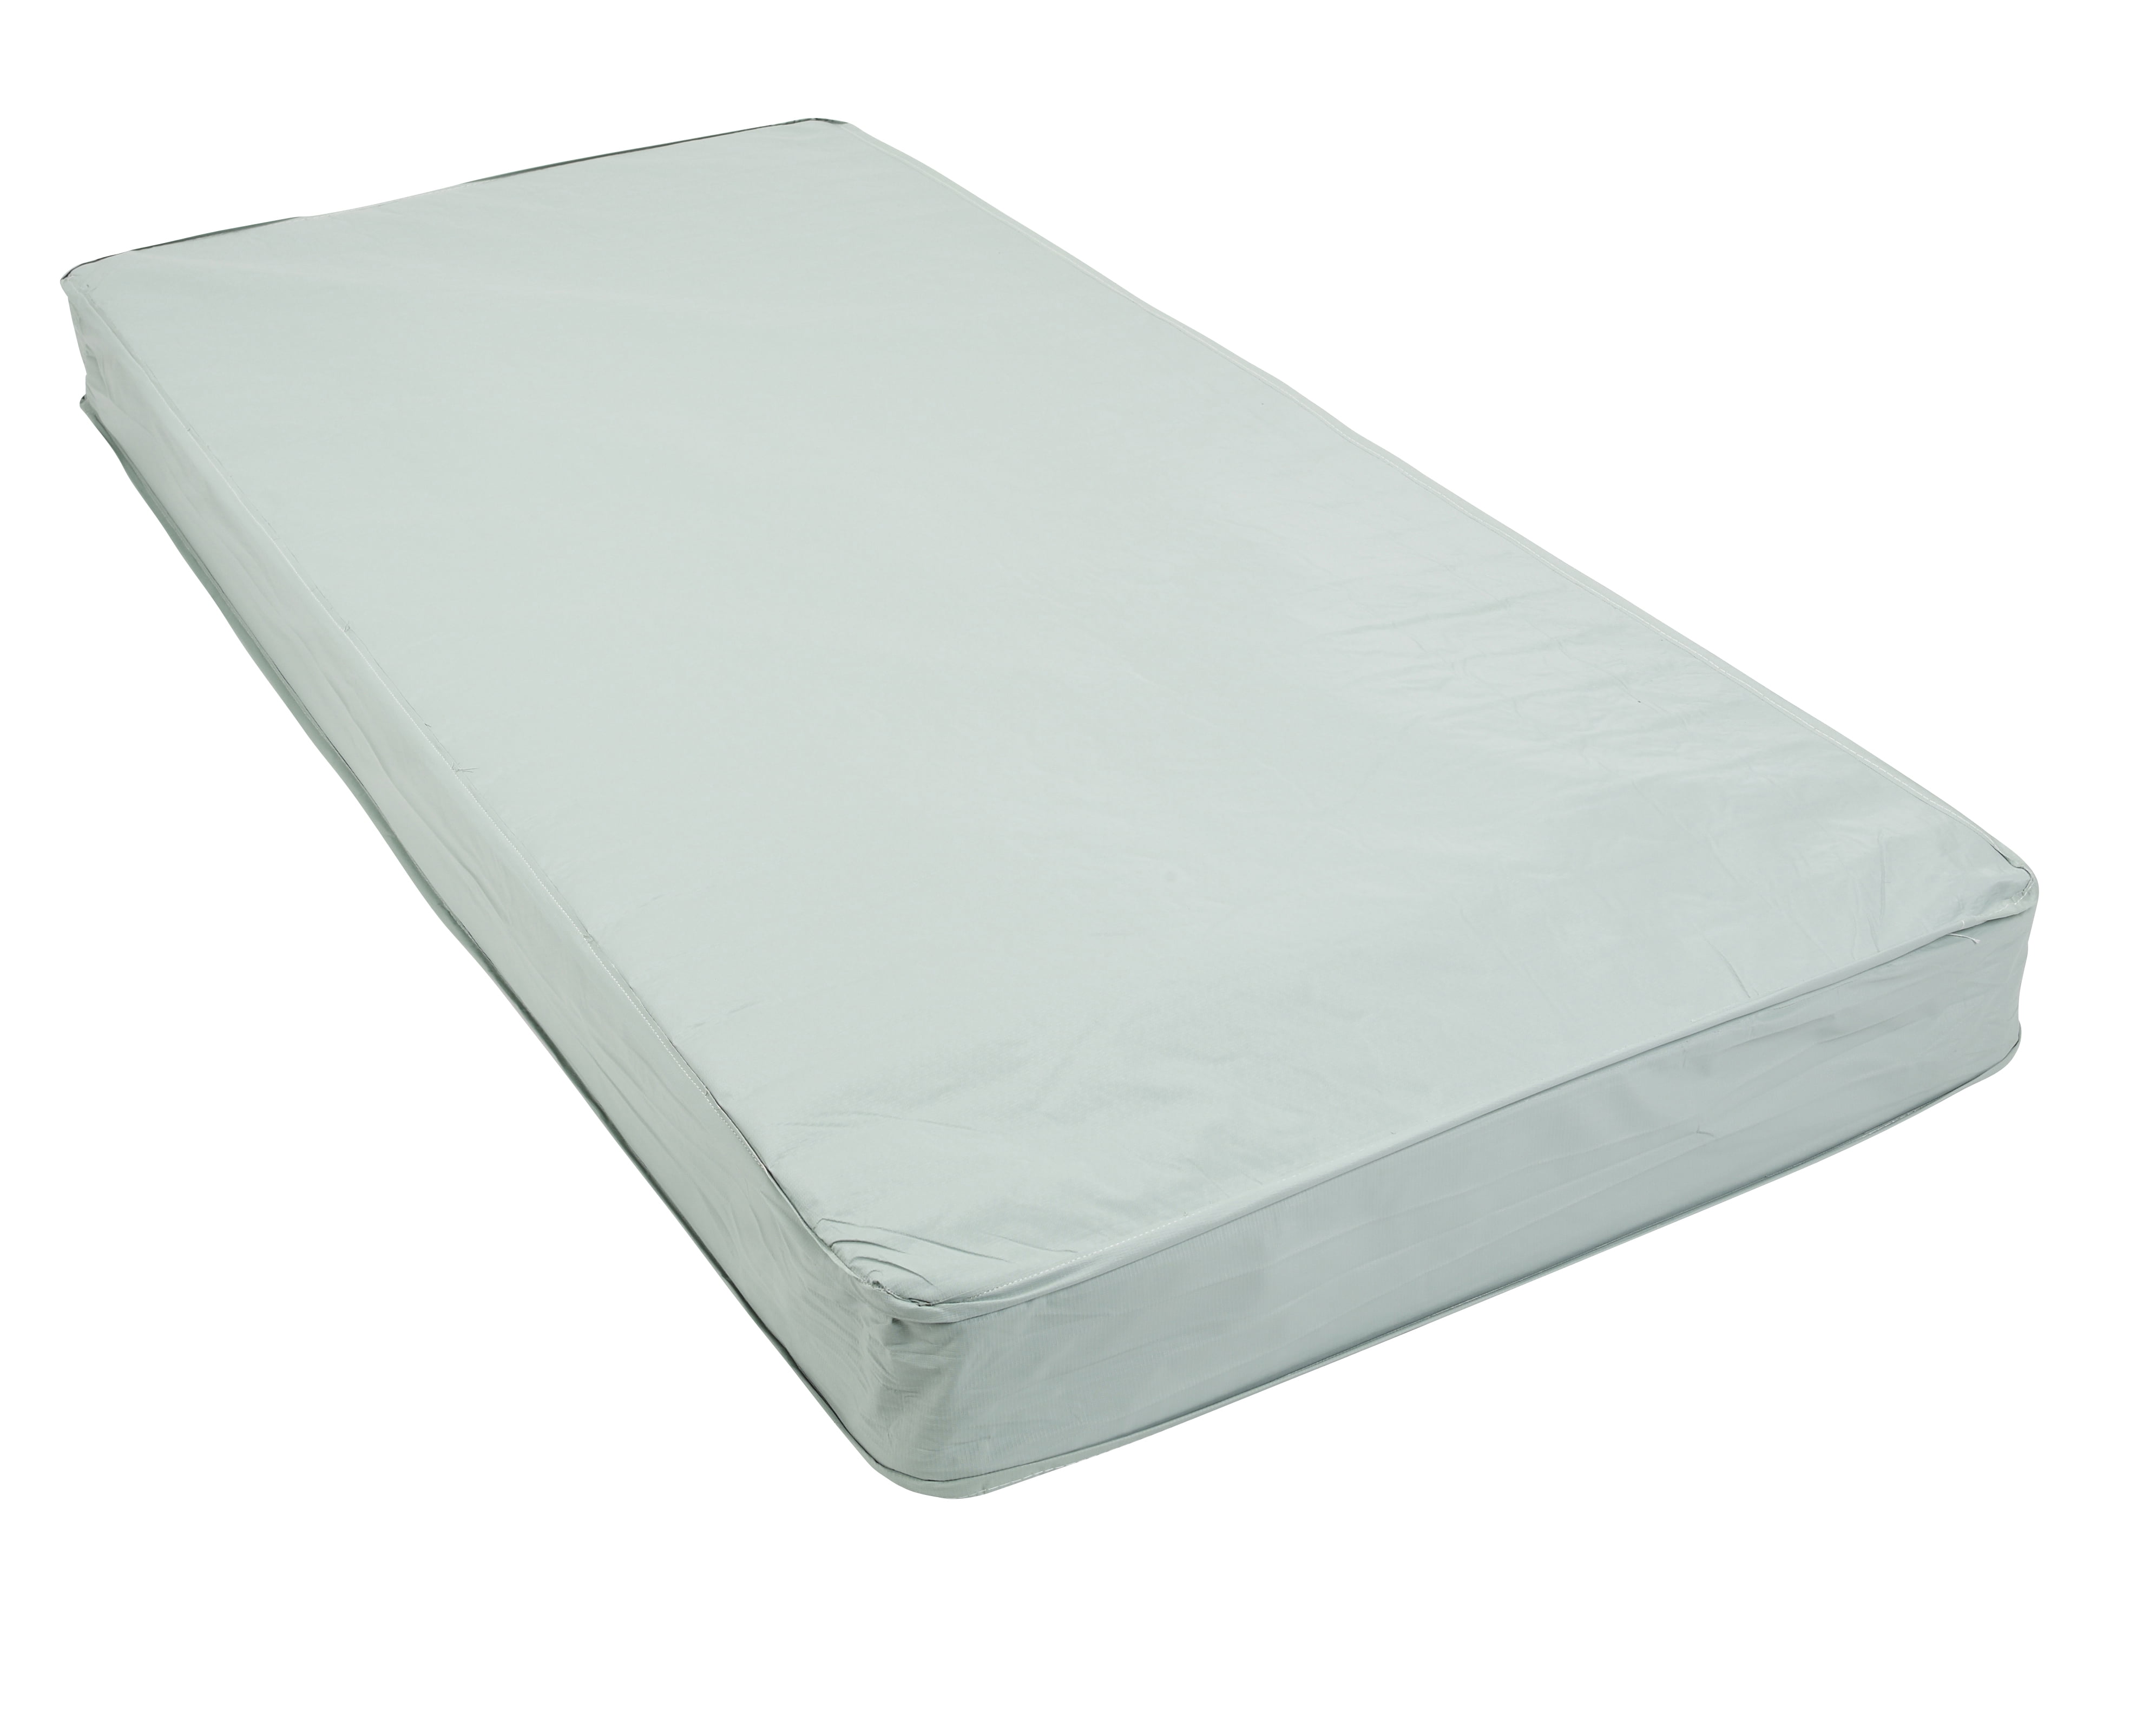 extra firm single mattress